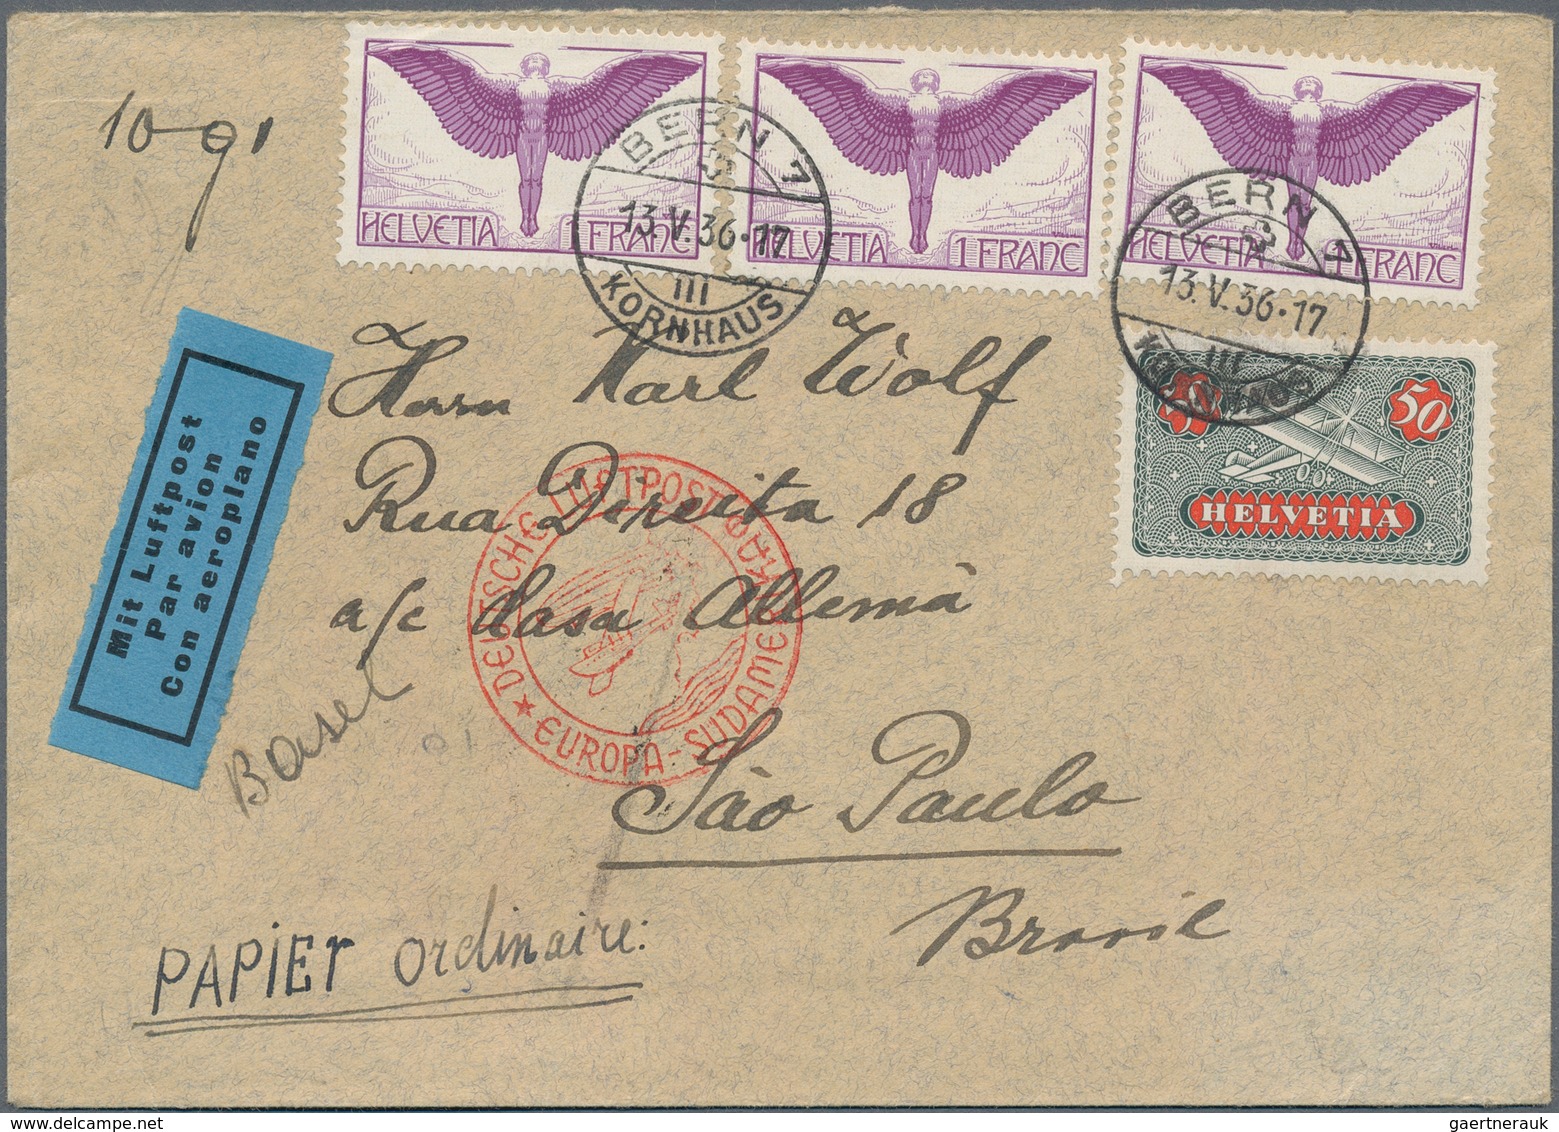 Flugpost Europa: 1914/1966, über 90 Briefe, Karten und Ganzsachen mit einigen besseren Flügen und Fr